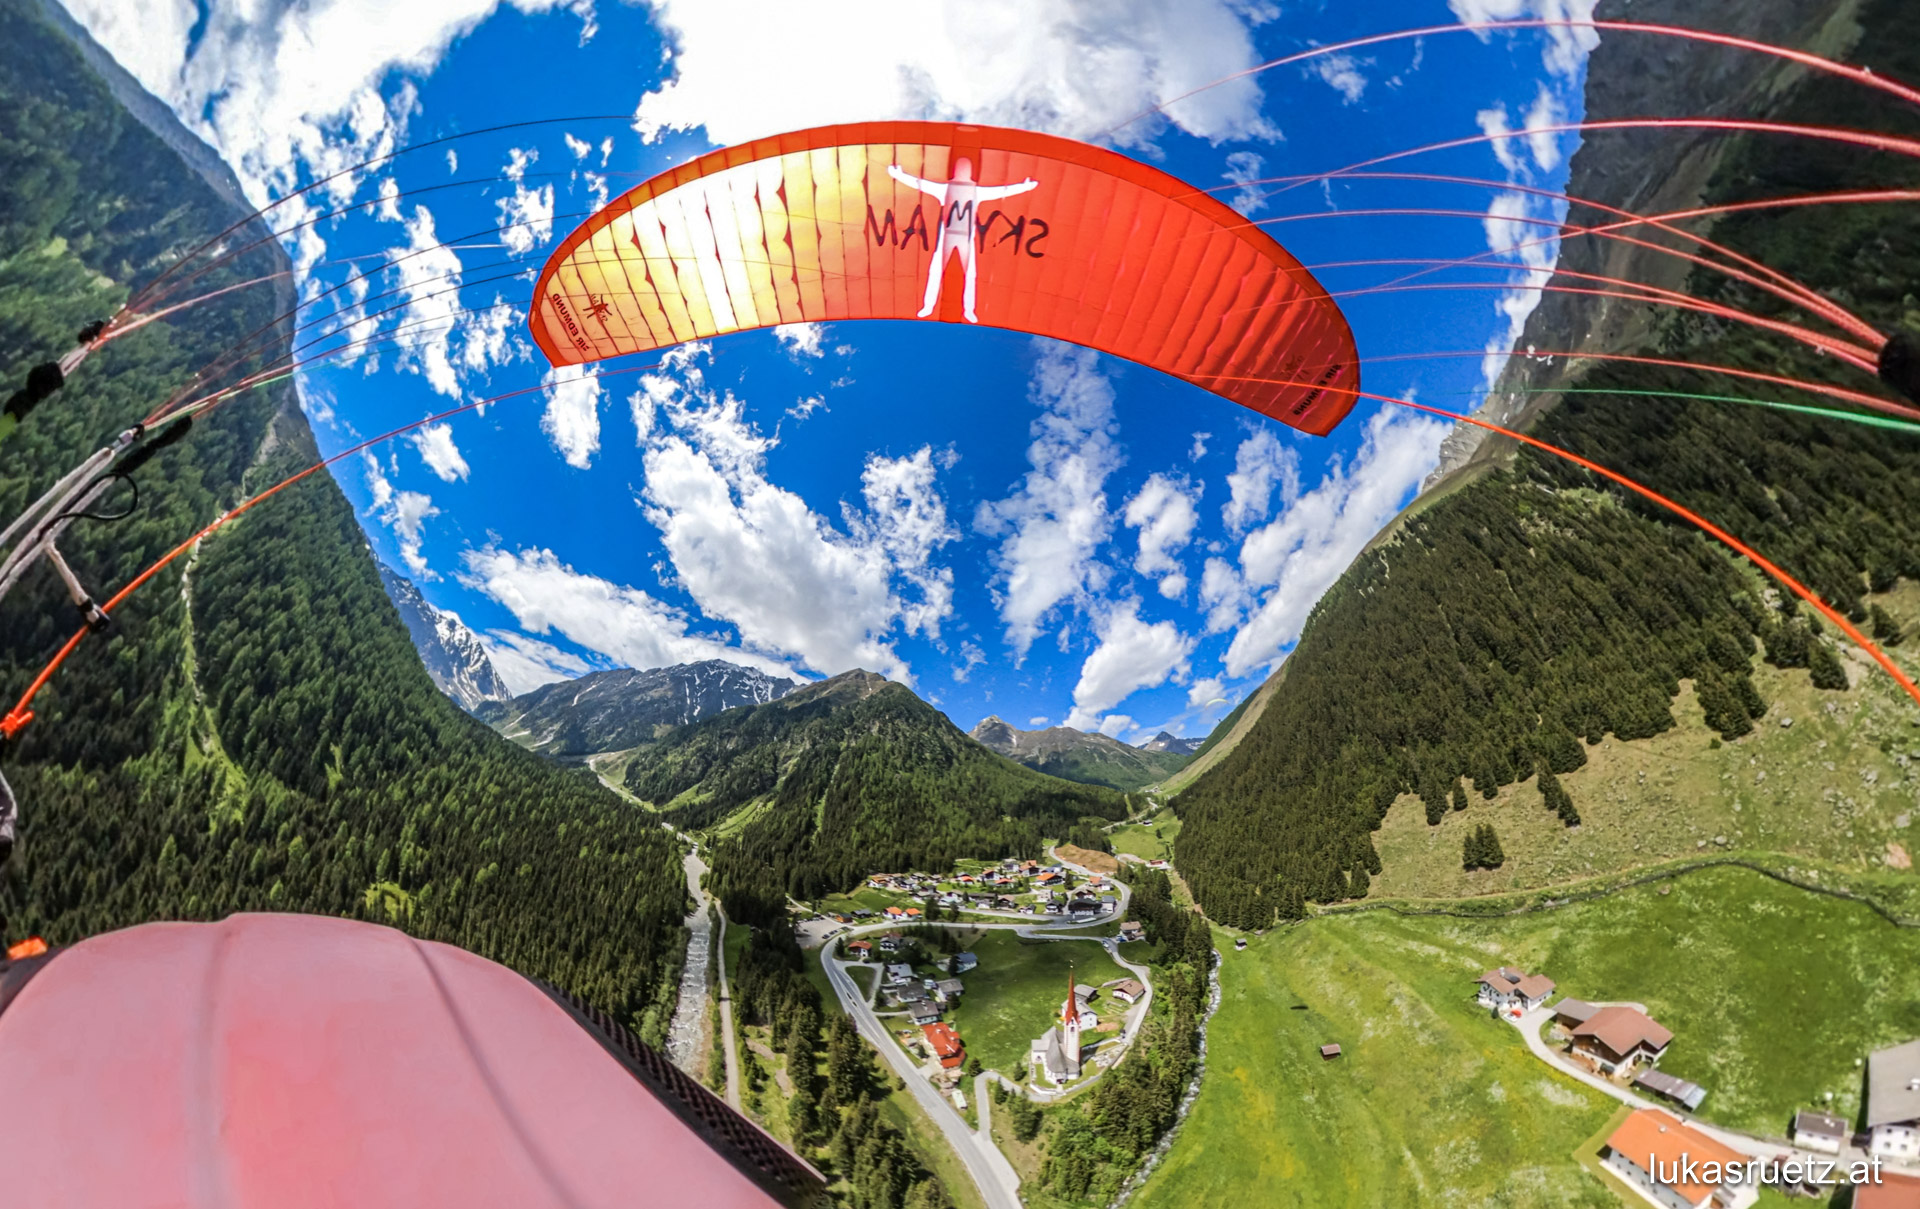 Gleitschirmfliegen in den Stubaier Alpen Was man halt so macht wenn der Neuschnee im Sommer nicht für Skitouren geeignet ist